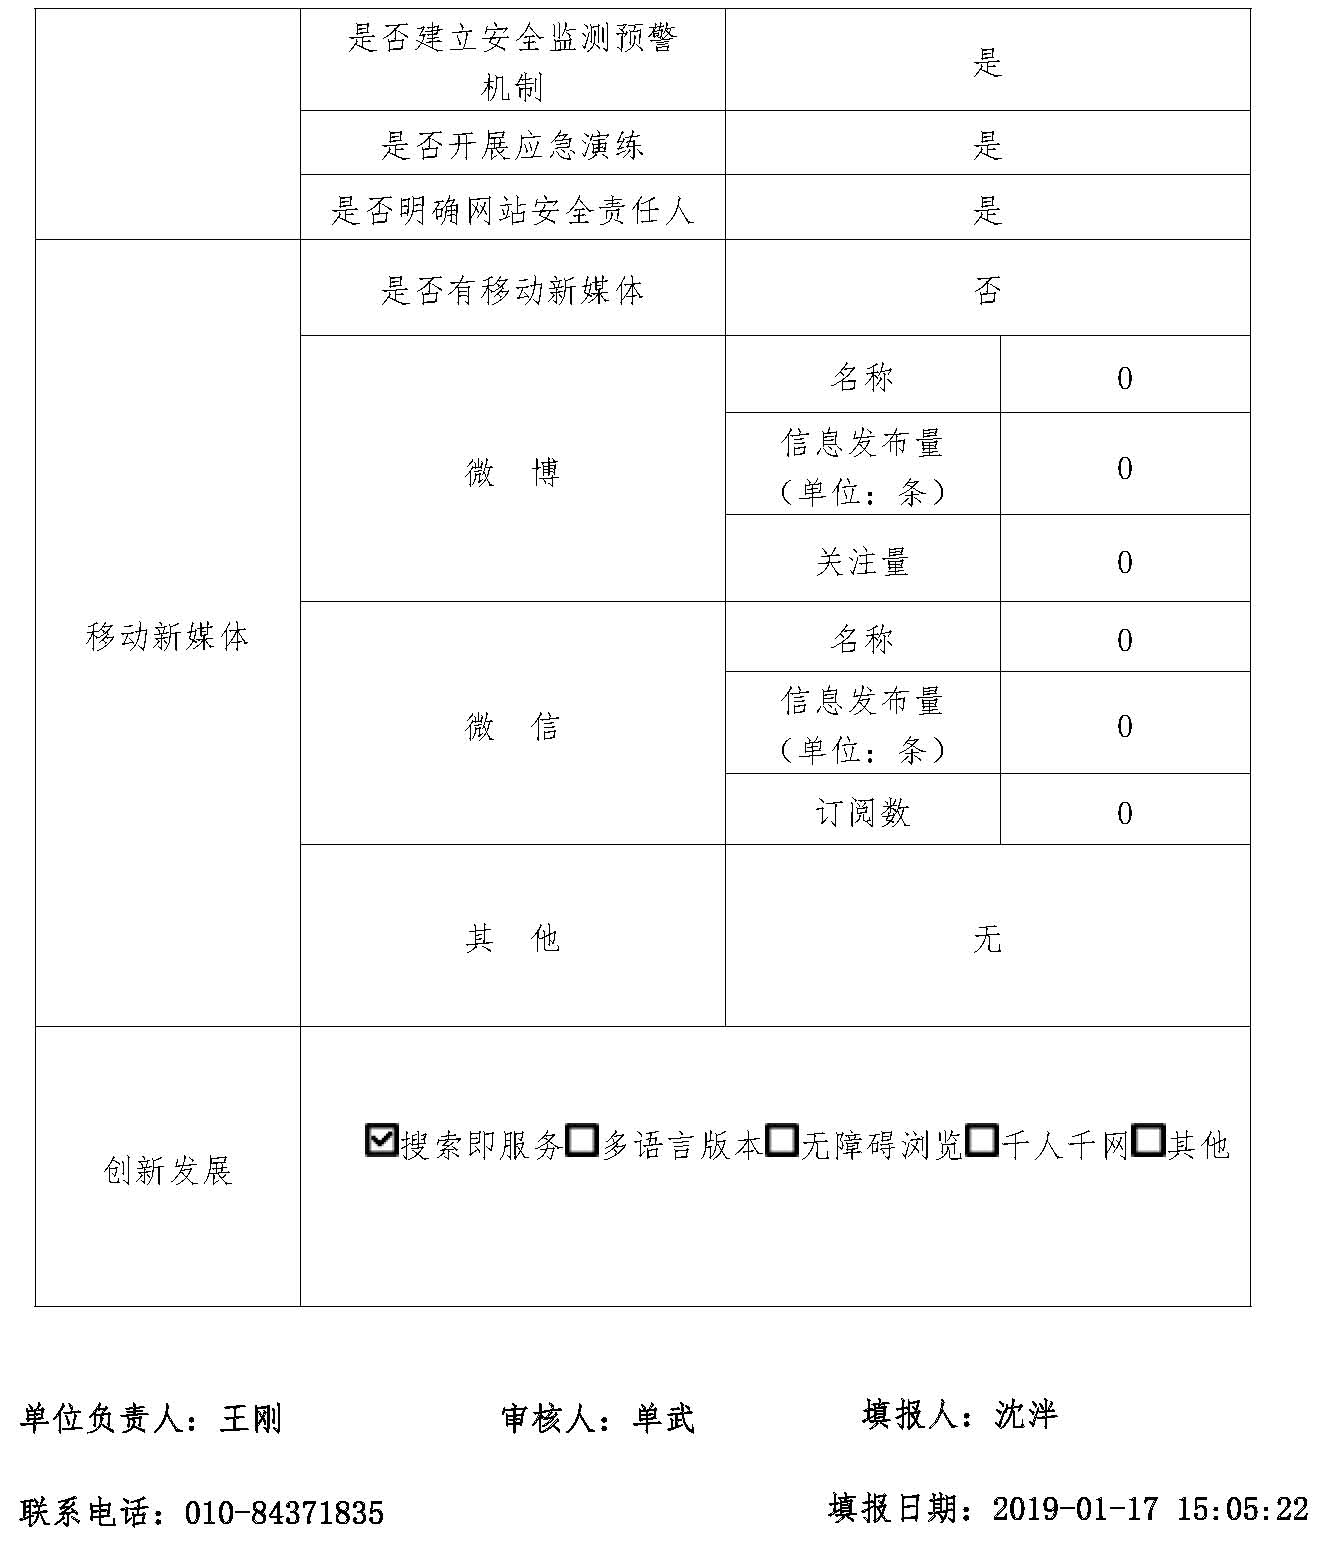 北京市政务数据资源网